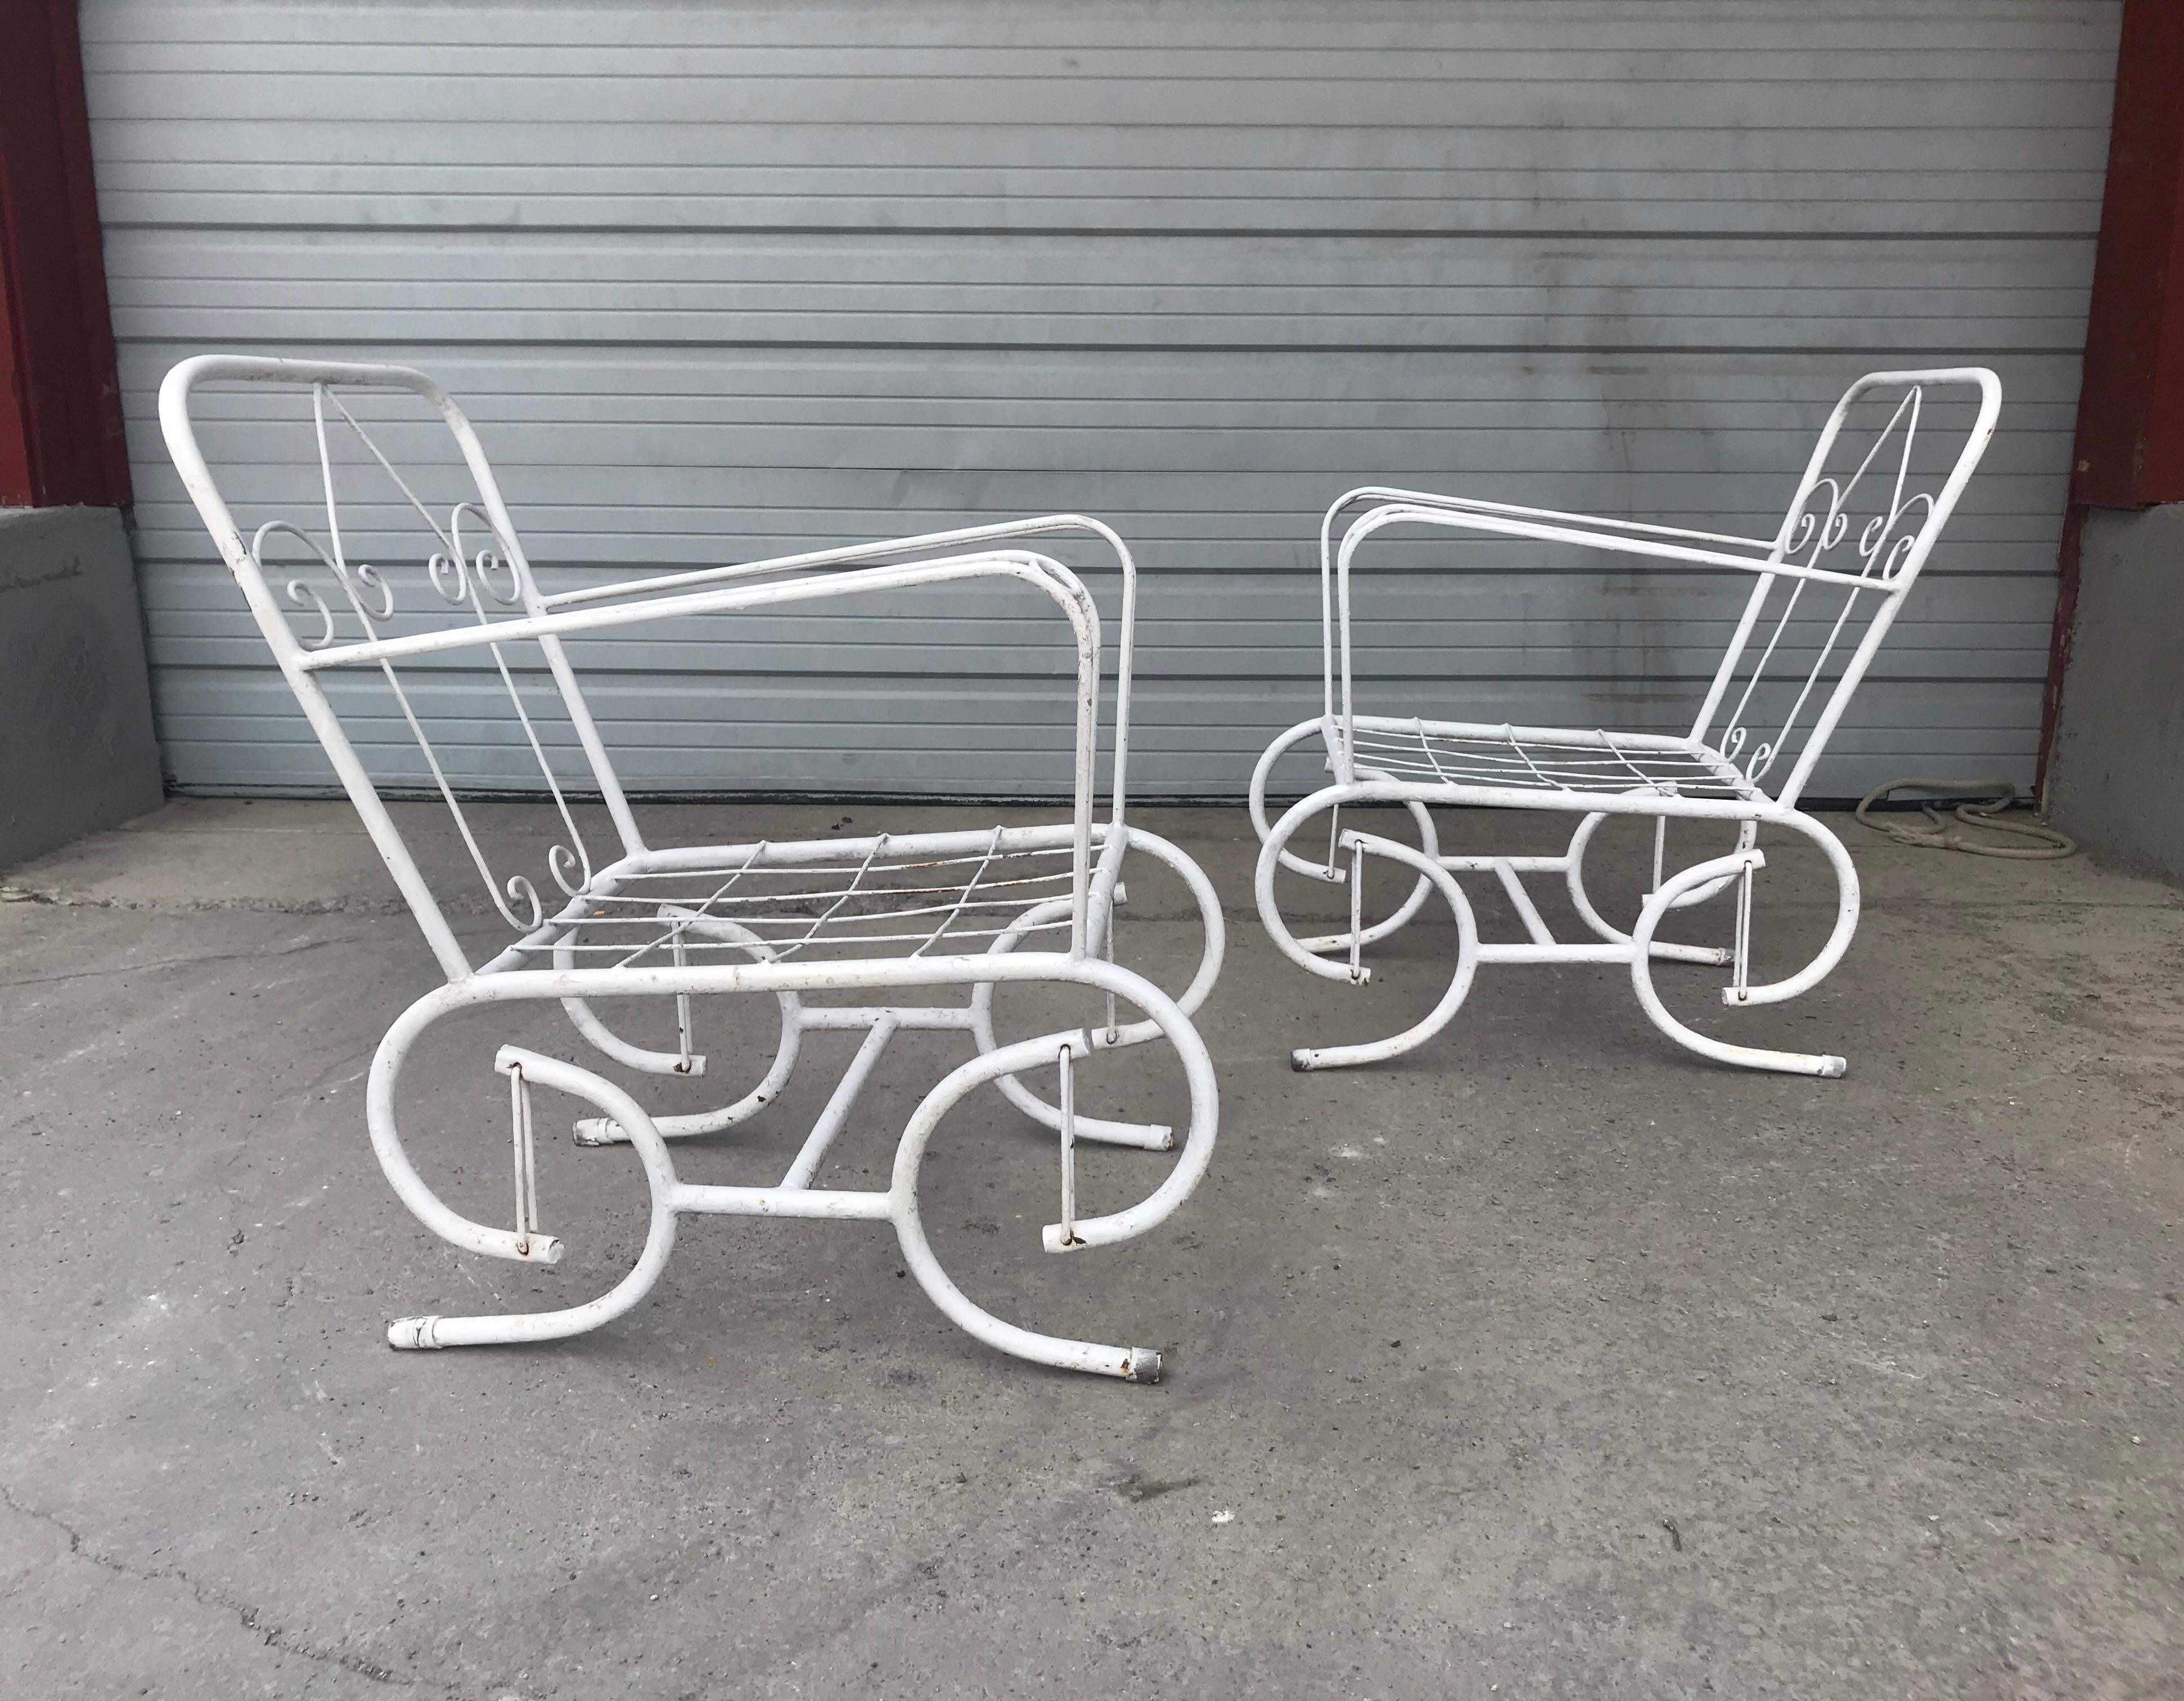 Paire de chaises d'extérieur stylisées en métal. Bonne qualité et construction. Un design moderniste inhabituel. Livraison en main propre possible à New York City ou n'importe où en route depuis Buffalo NY.